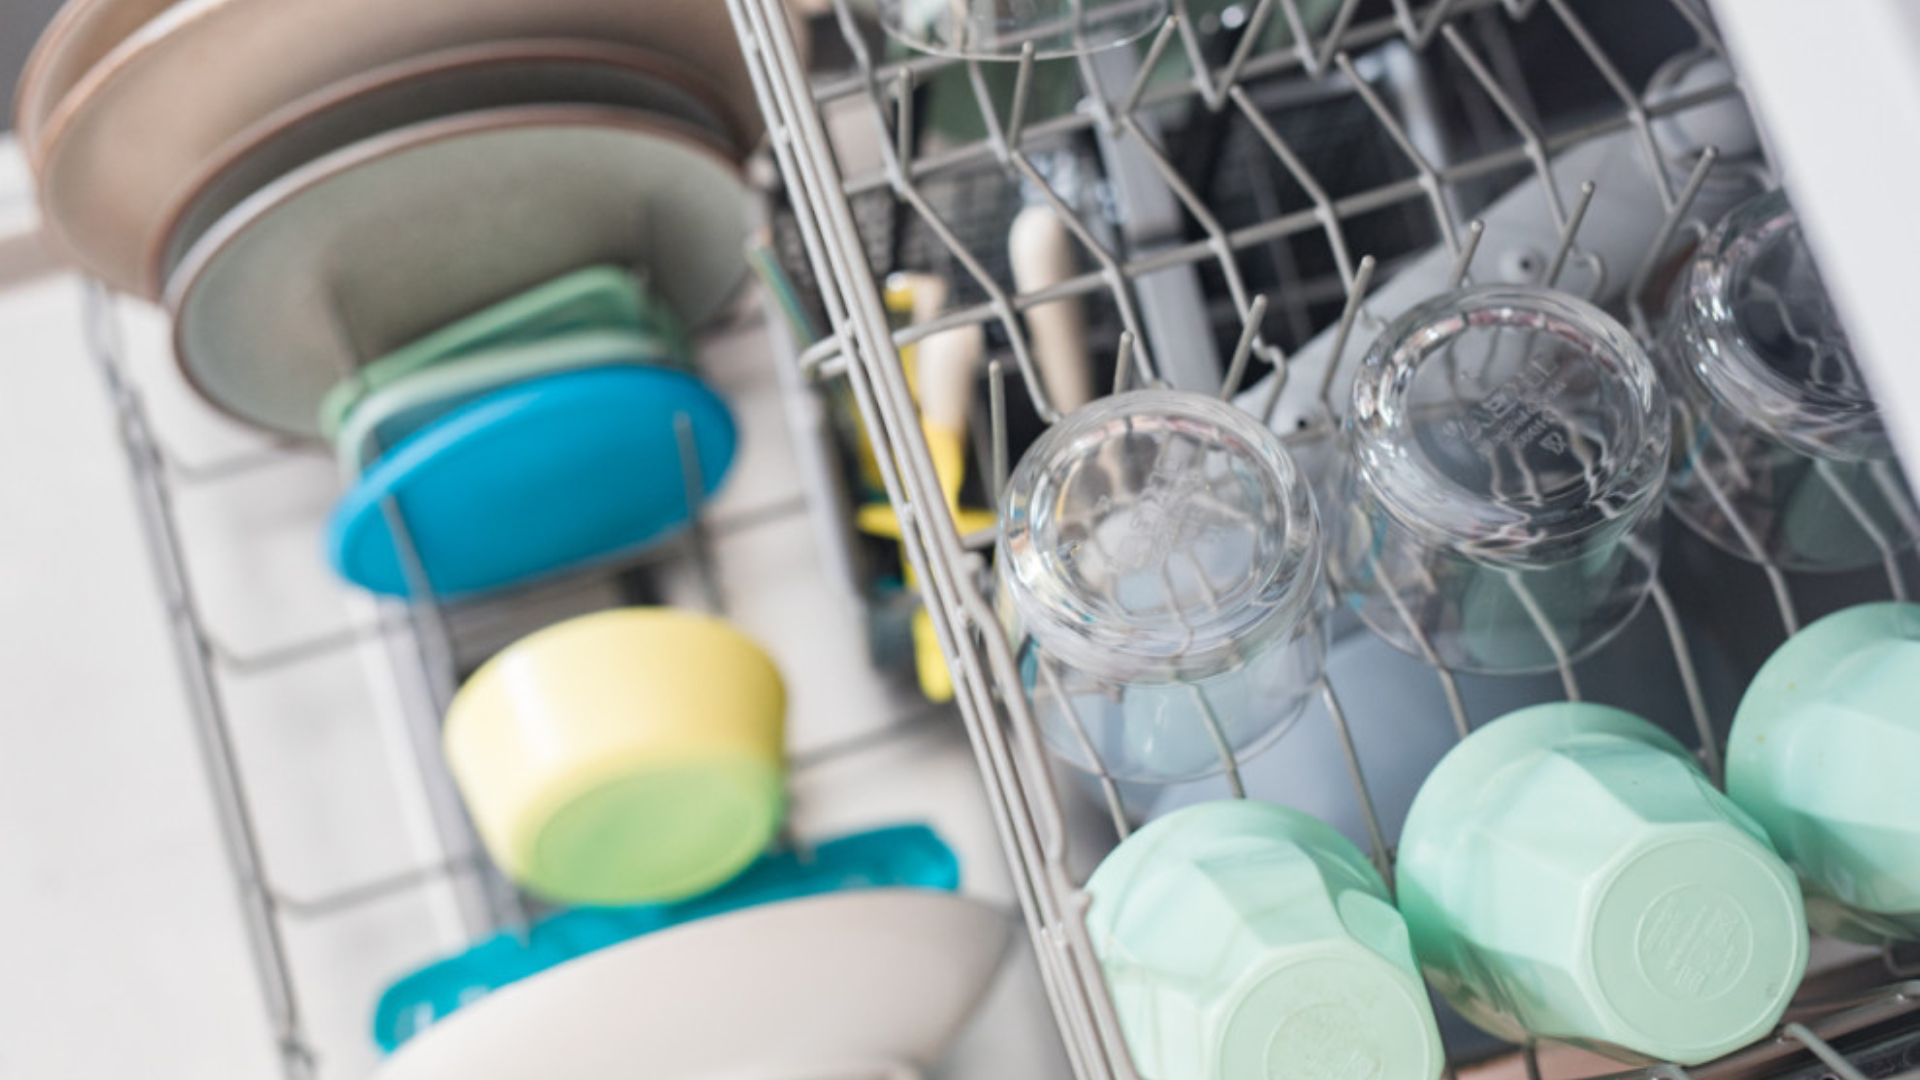 Cosas que puedes meter en el lavavajillas y que nada tienen que ver con platos o cubiertos